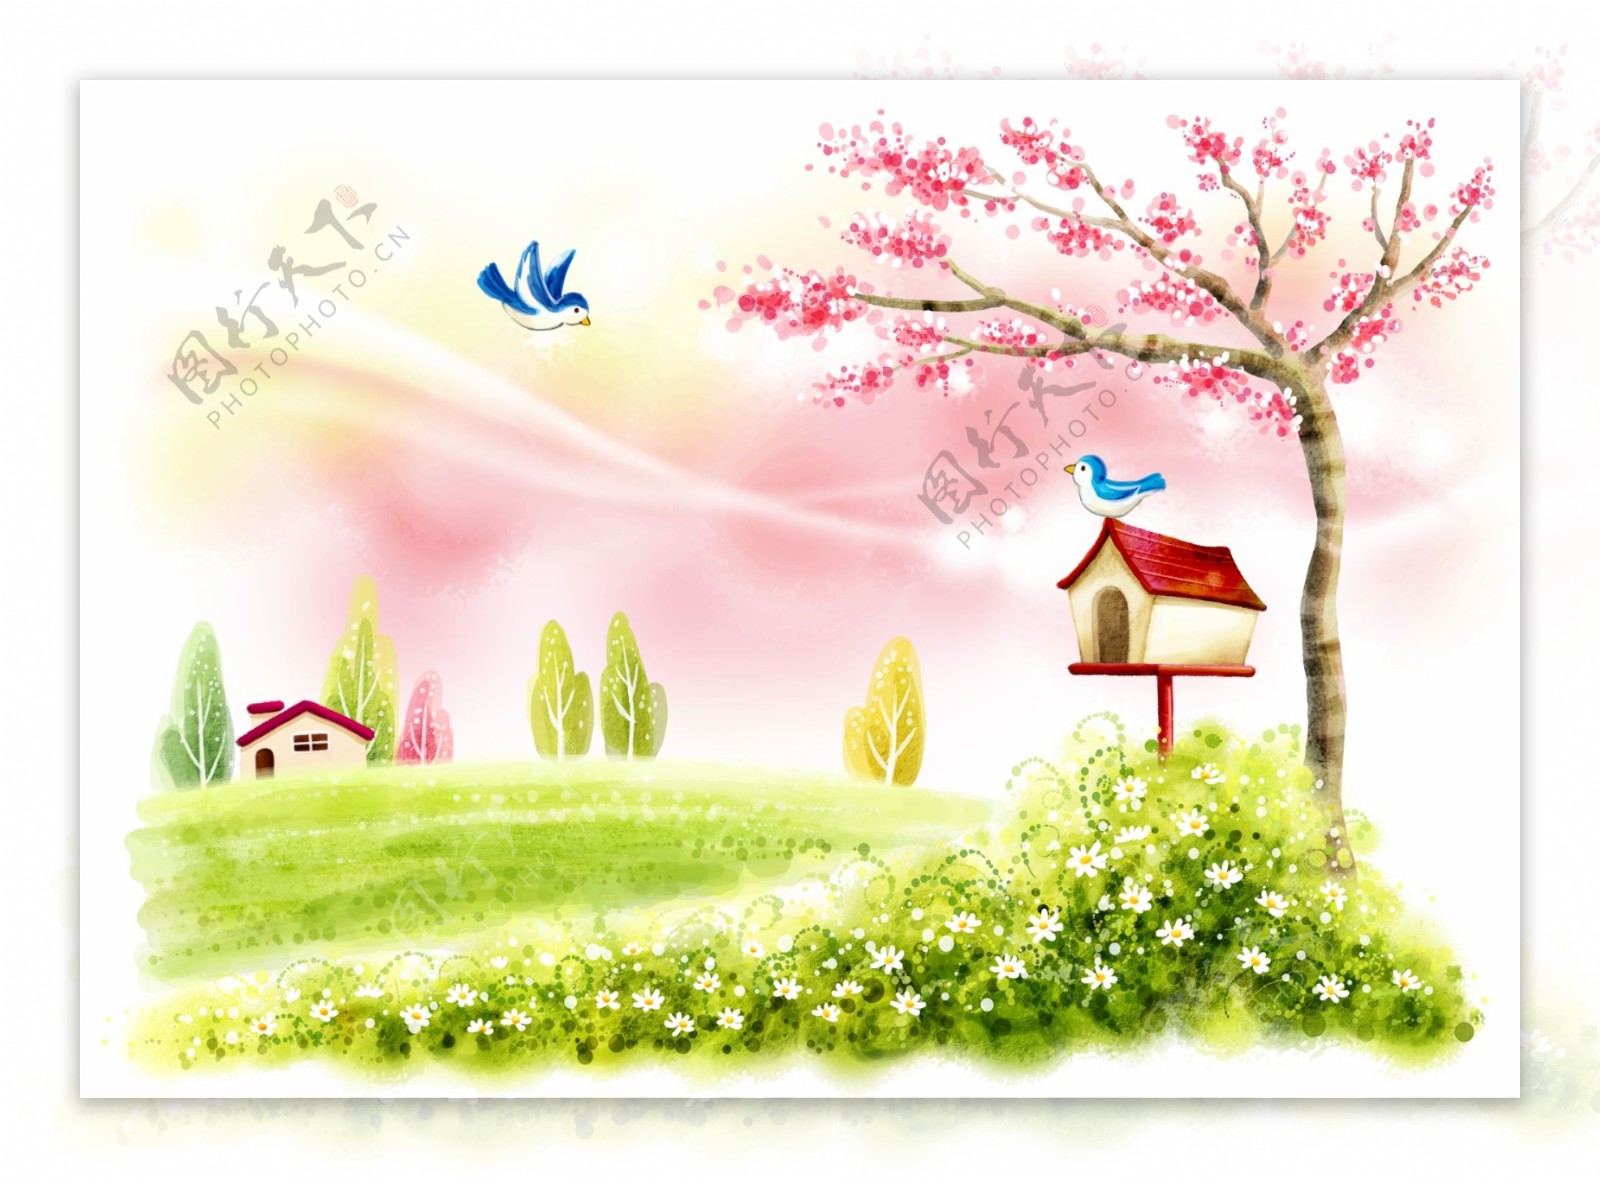 夏日风景鸟类邮箱小屋手绘插画图片